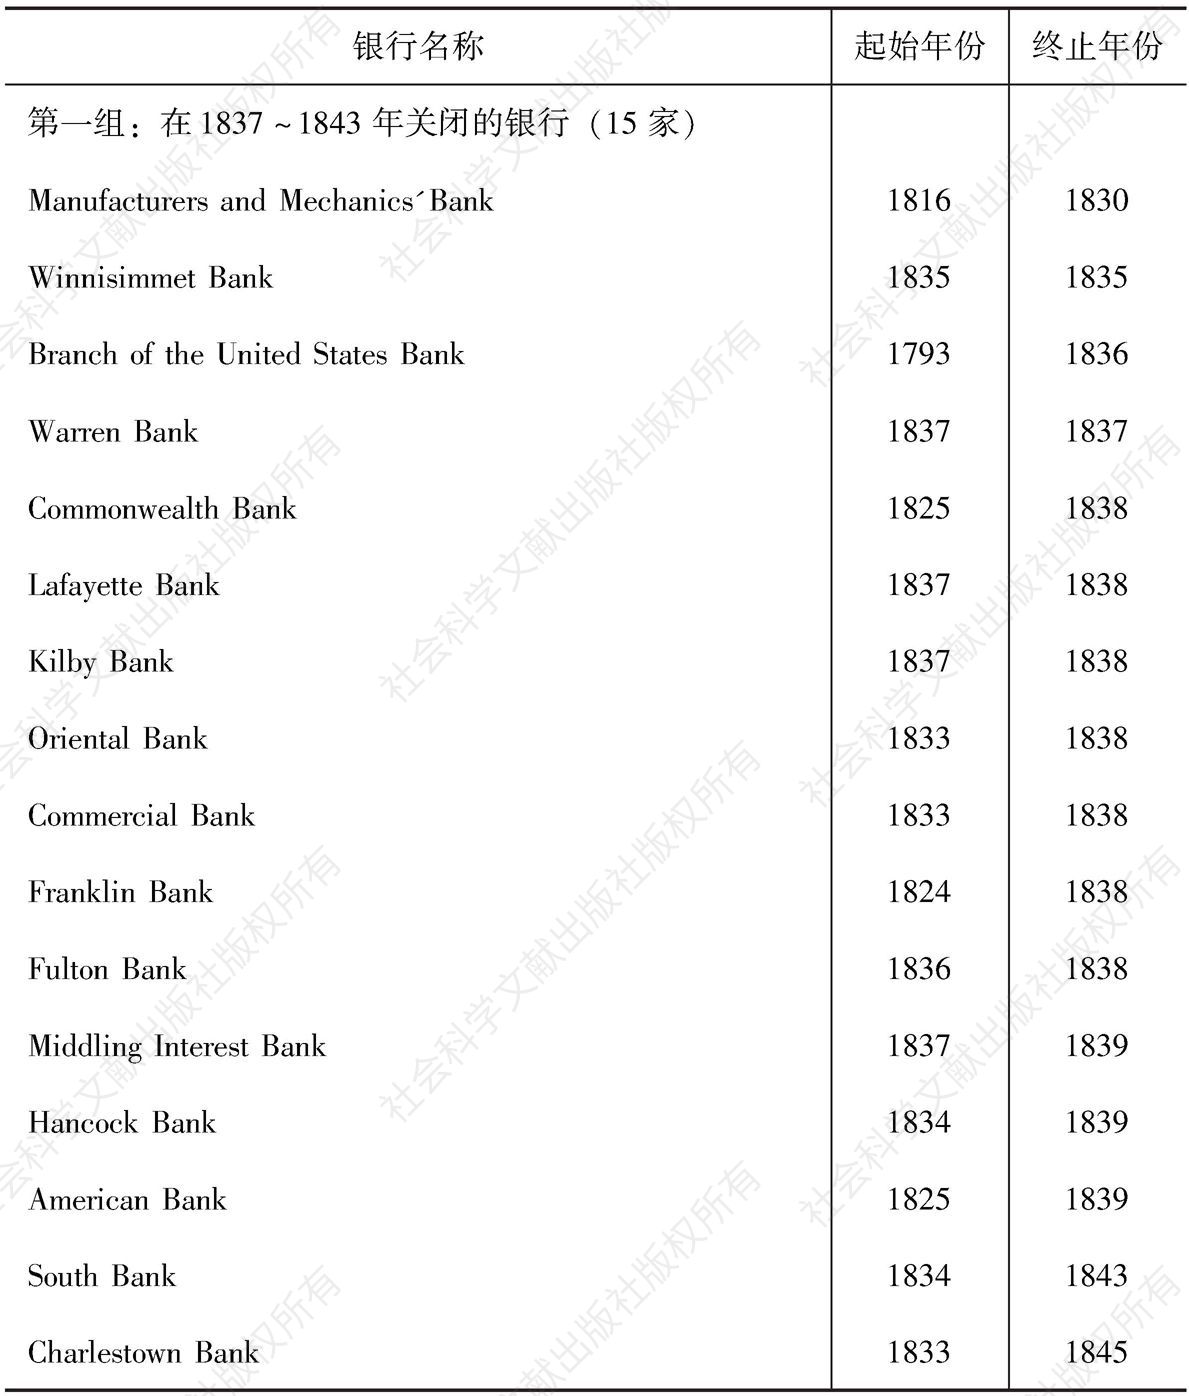 表5-13 《马萨诸塞州登记簿》中波士顿银行的起始和终止年份